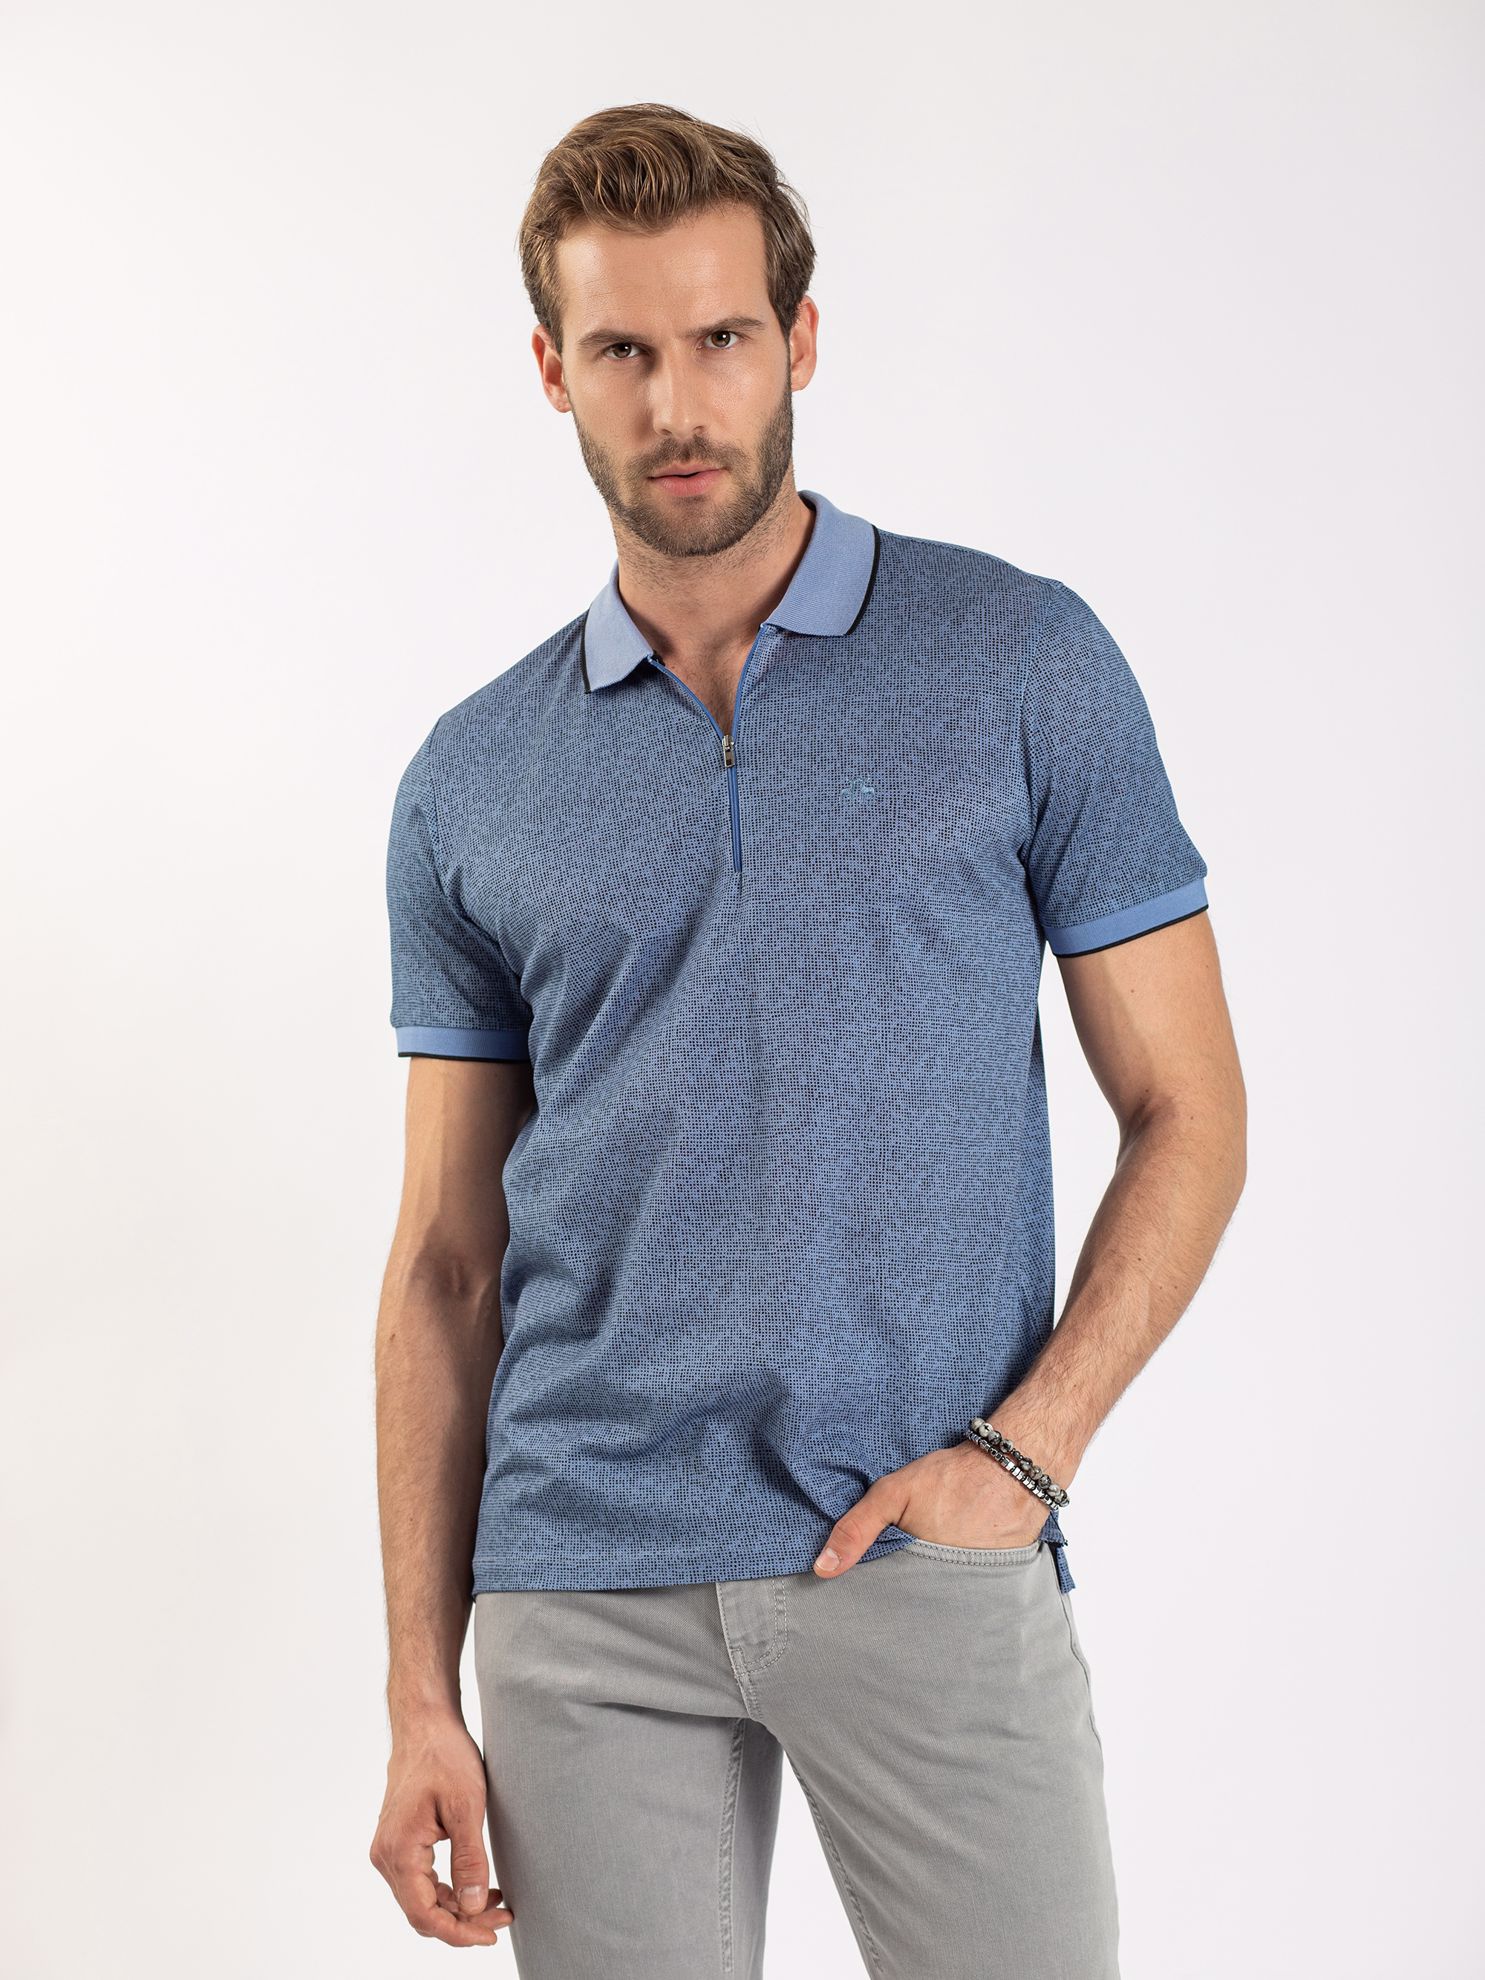 Karaca Erkek Slim Fit Polo Yaka Tişört-Mavi. ürün görseli